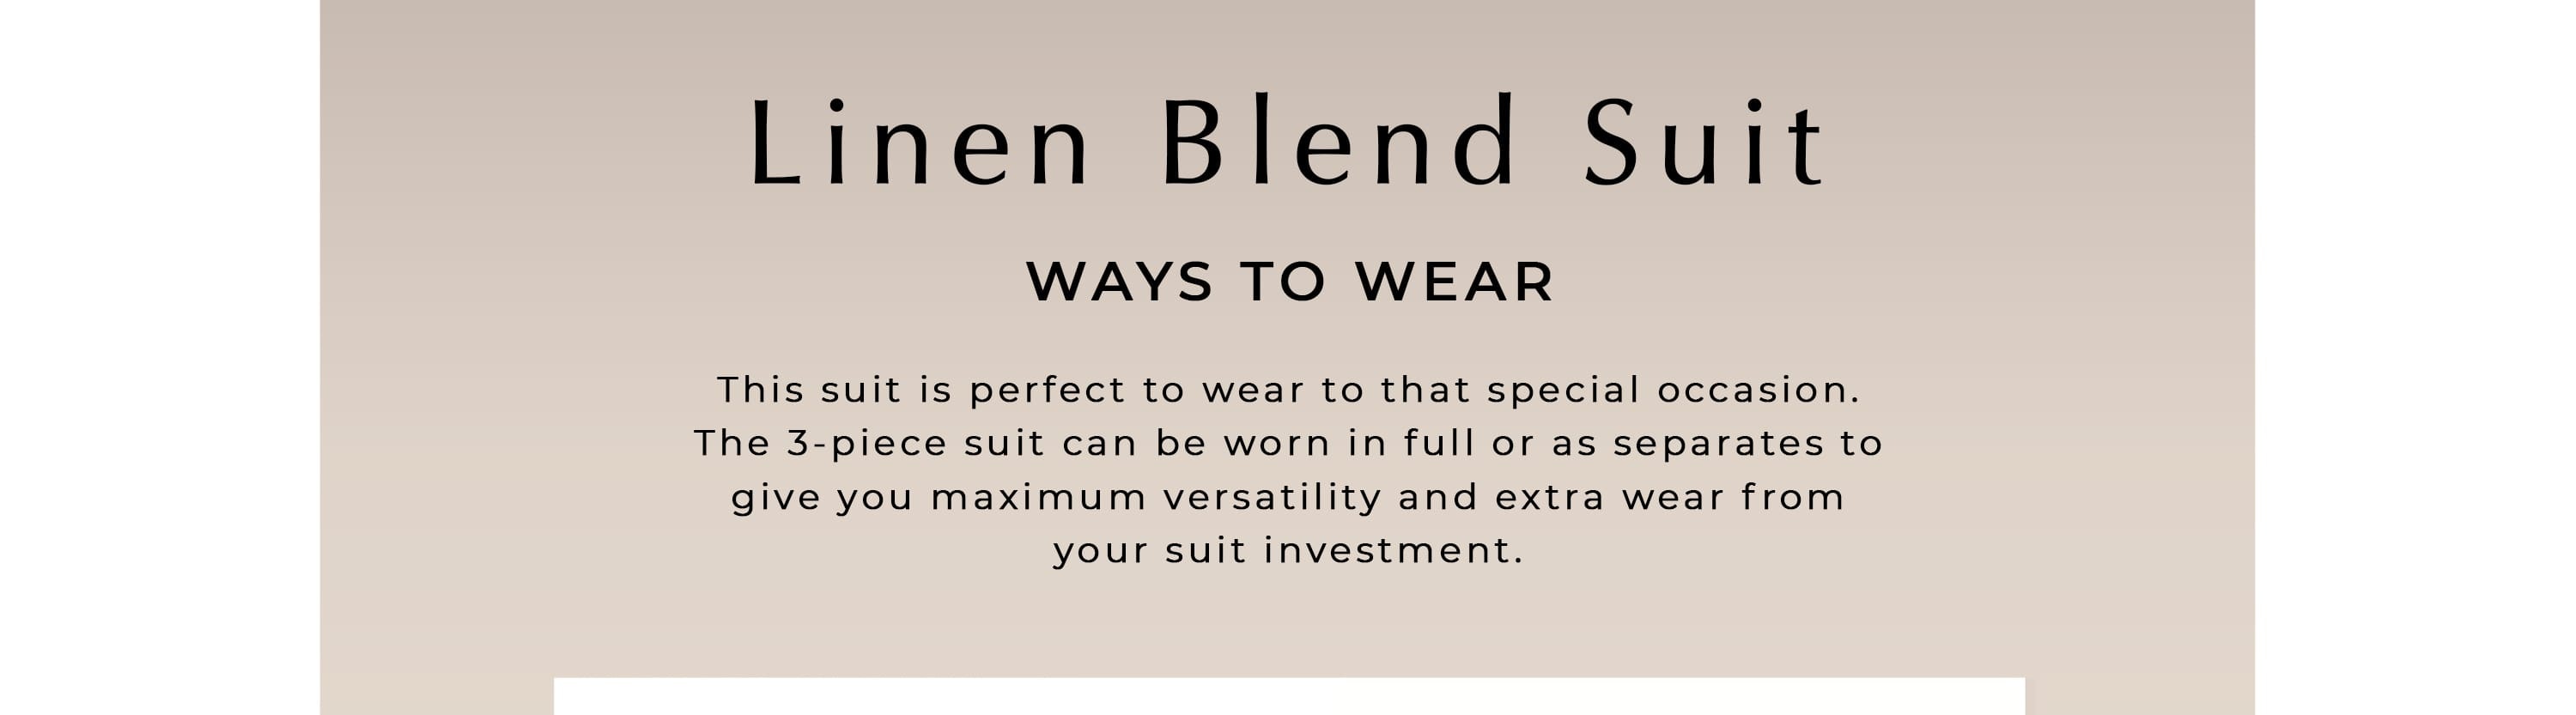 Linen Blend Suit